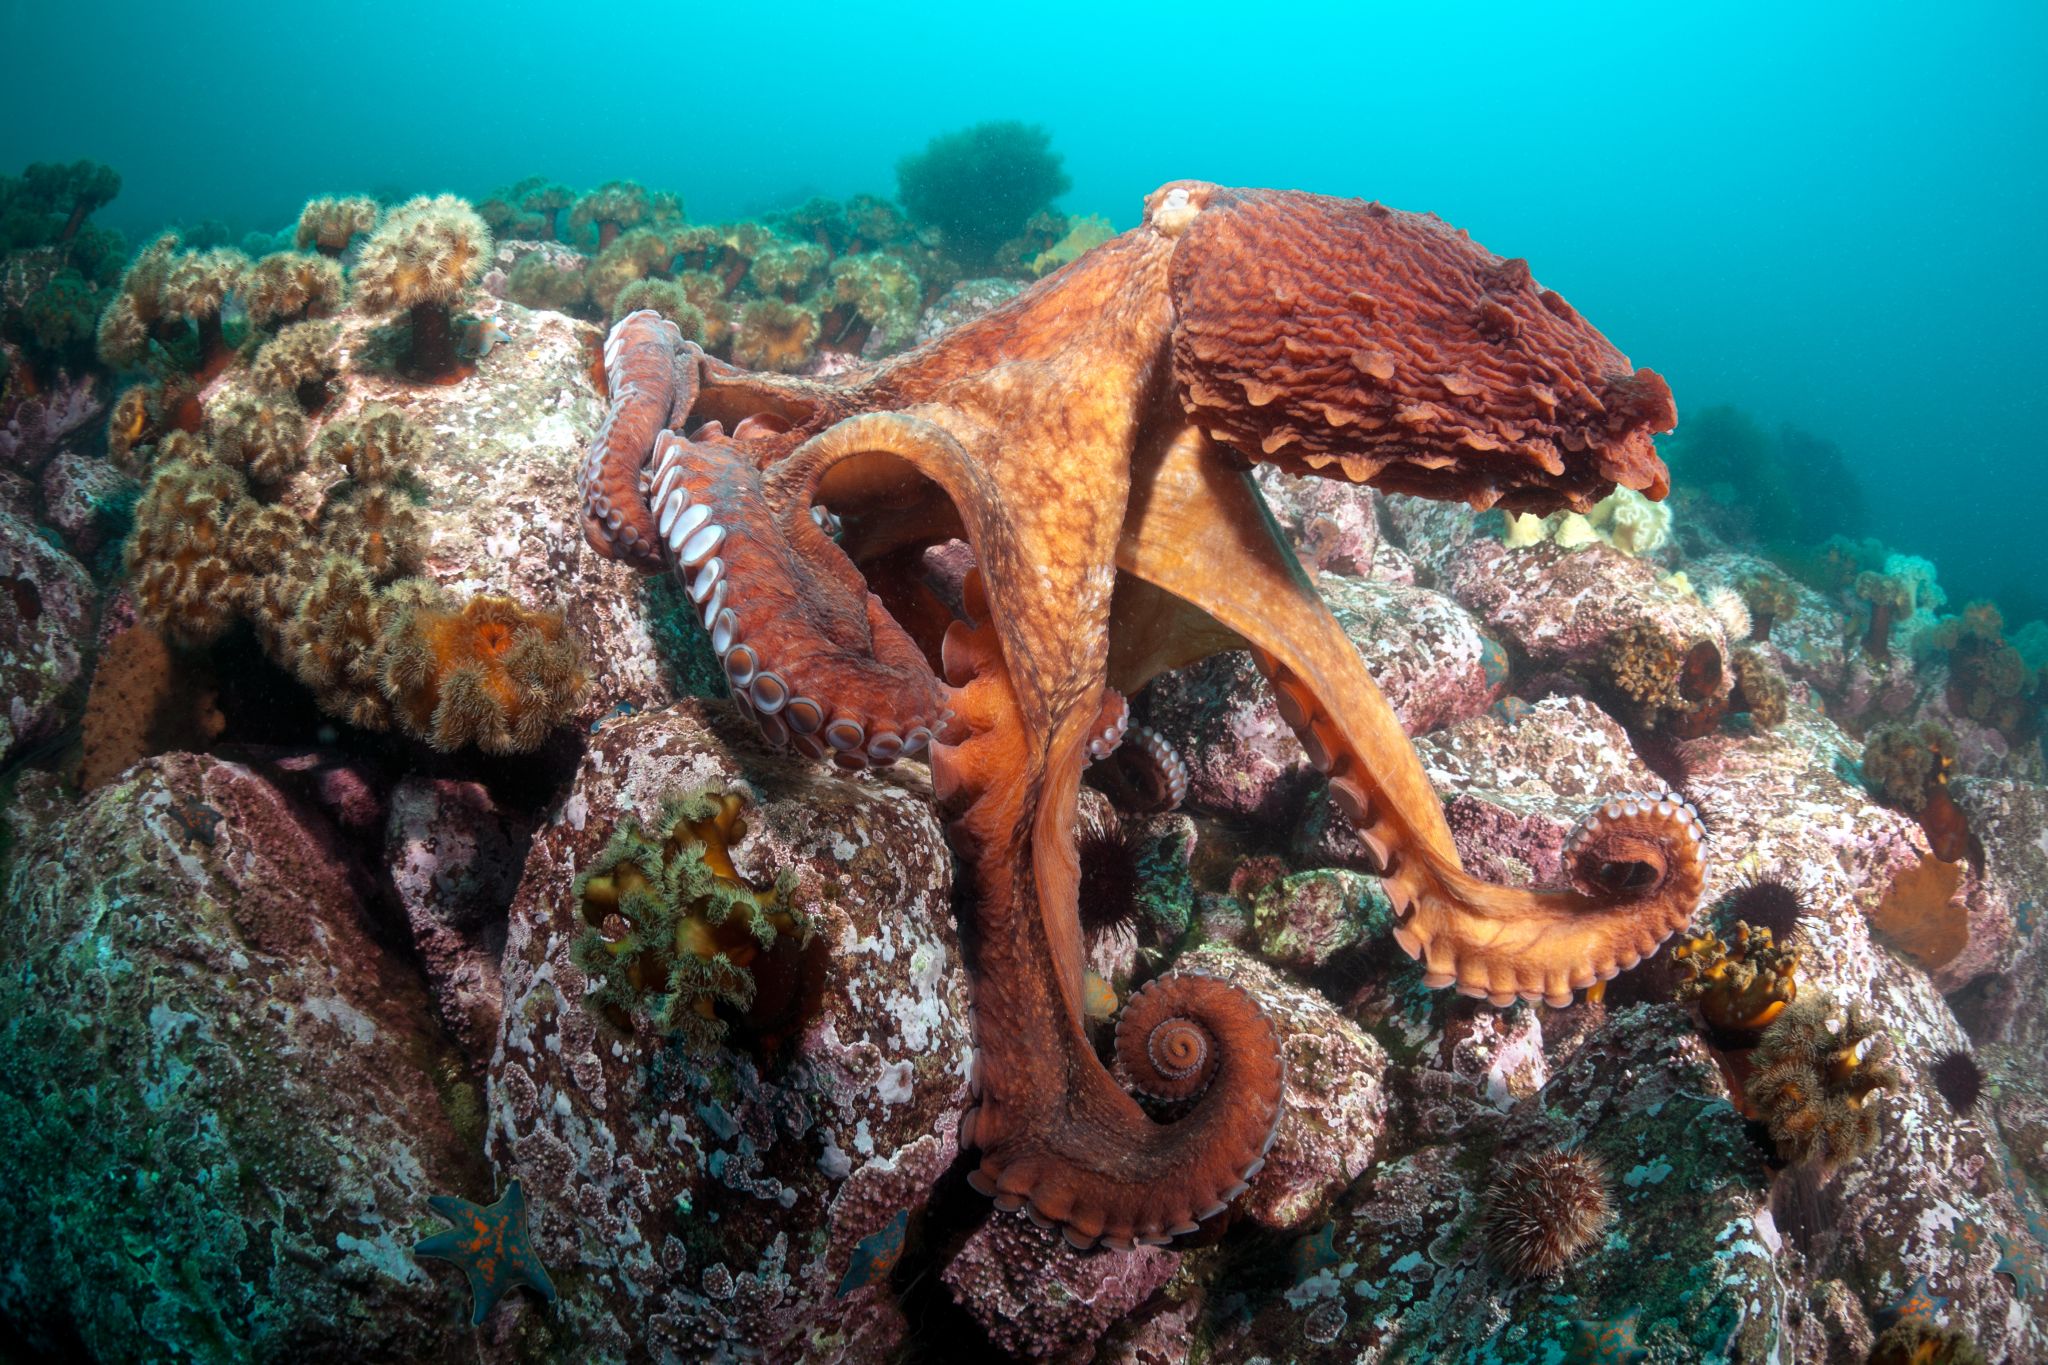 grâce au mimétisme, la pieuvre prend la couleur des rochers alentour